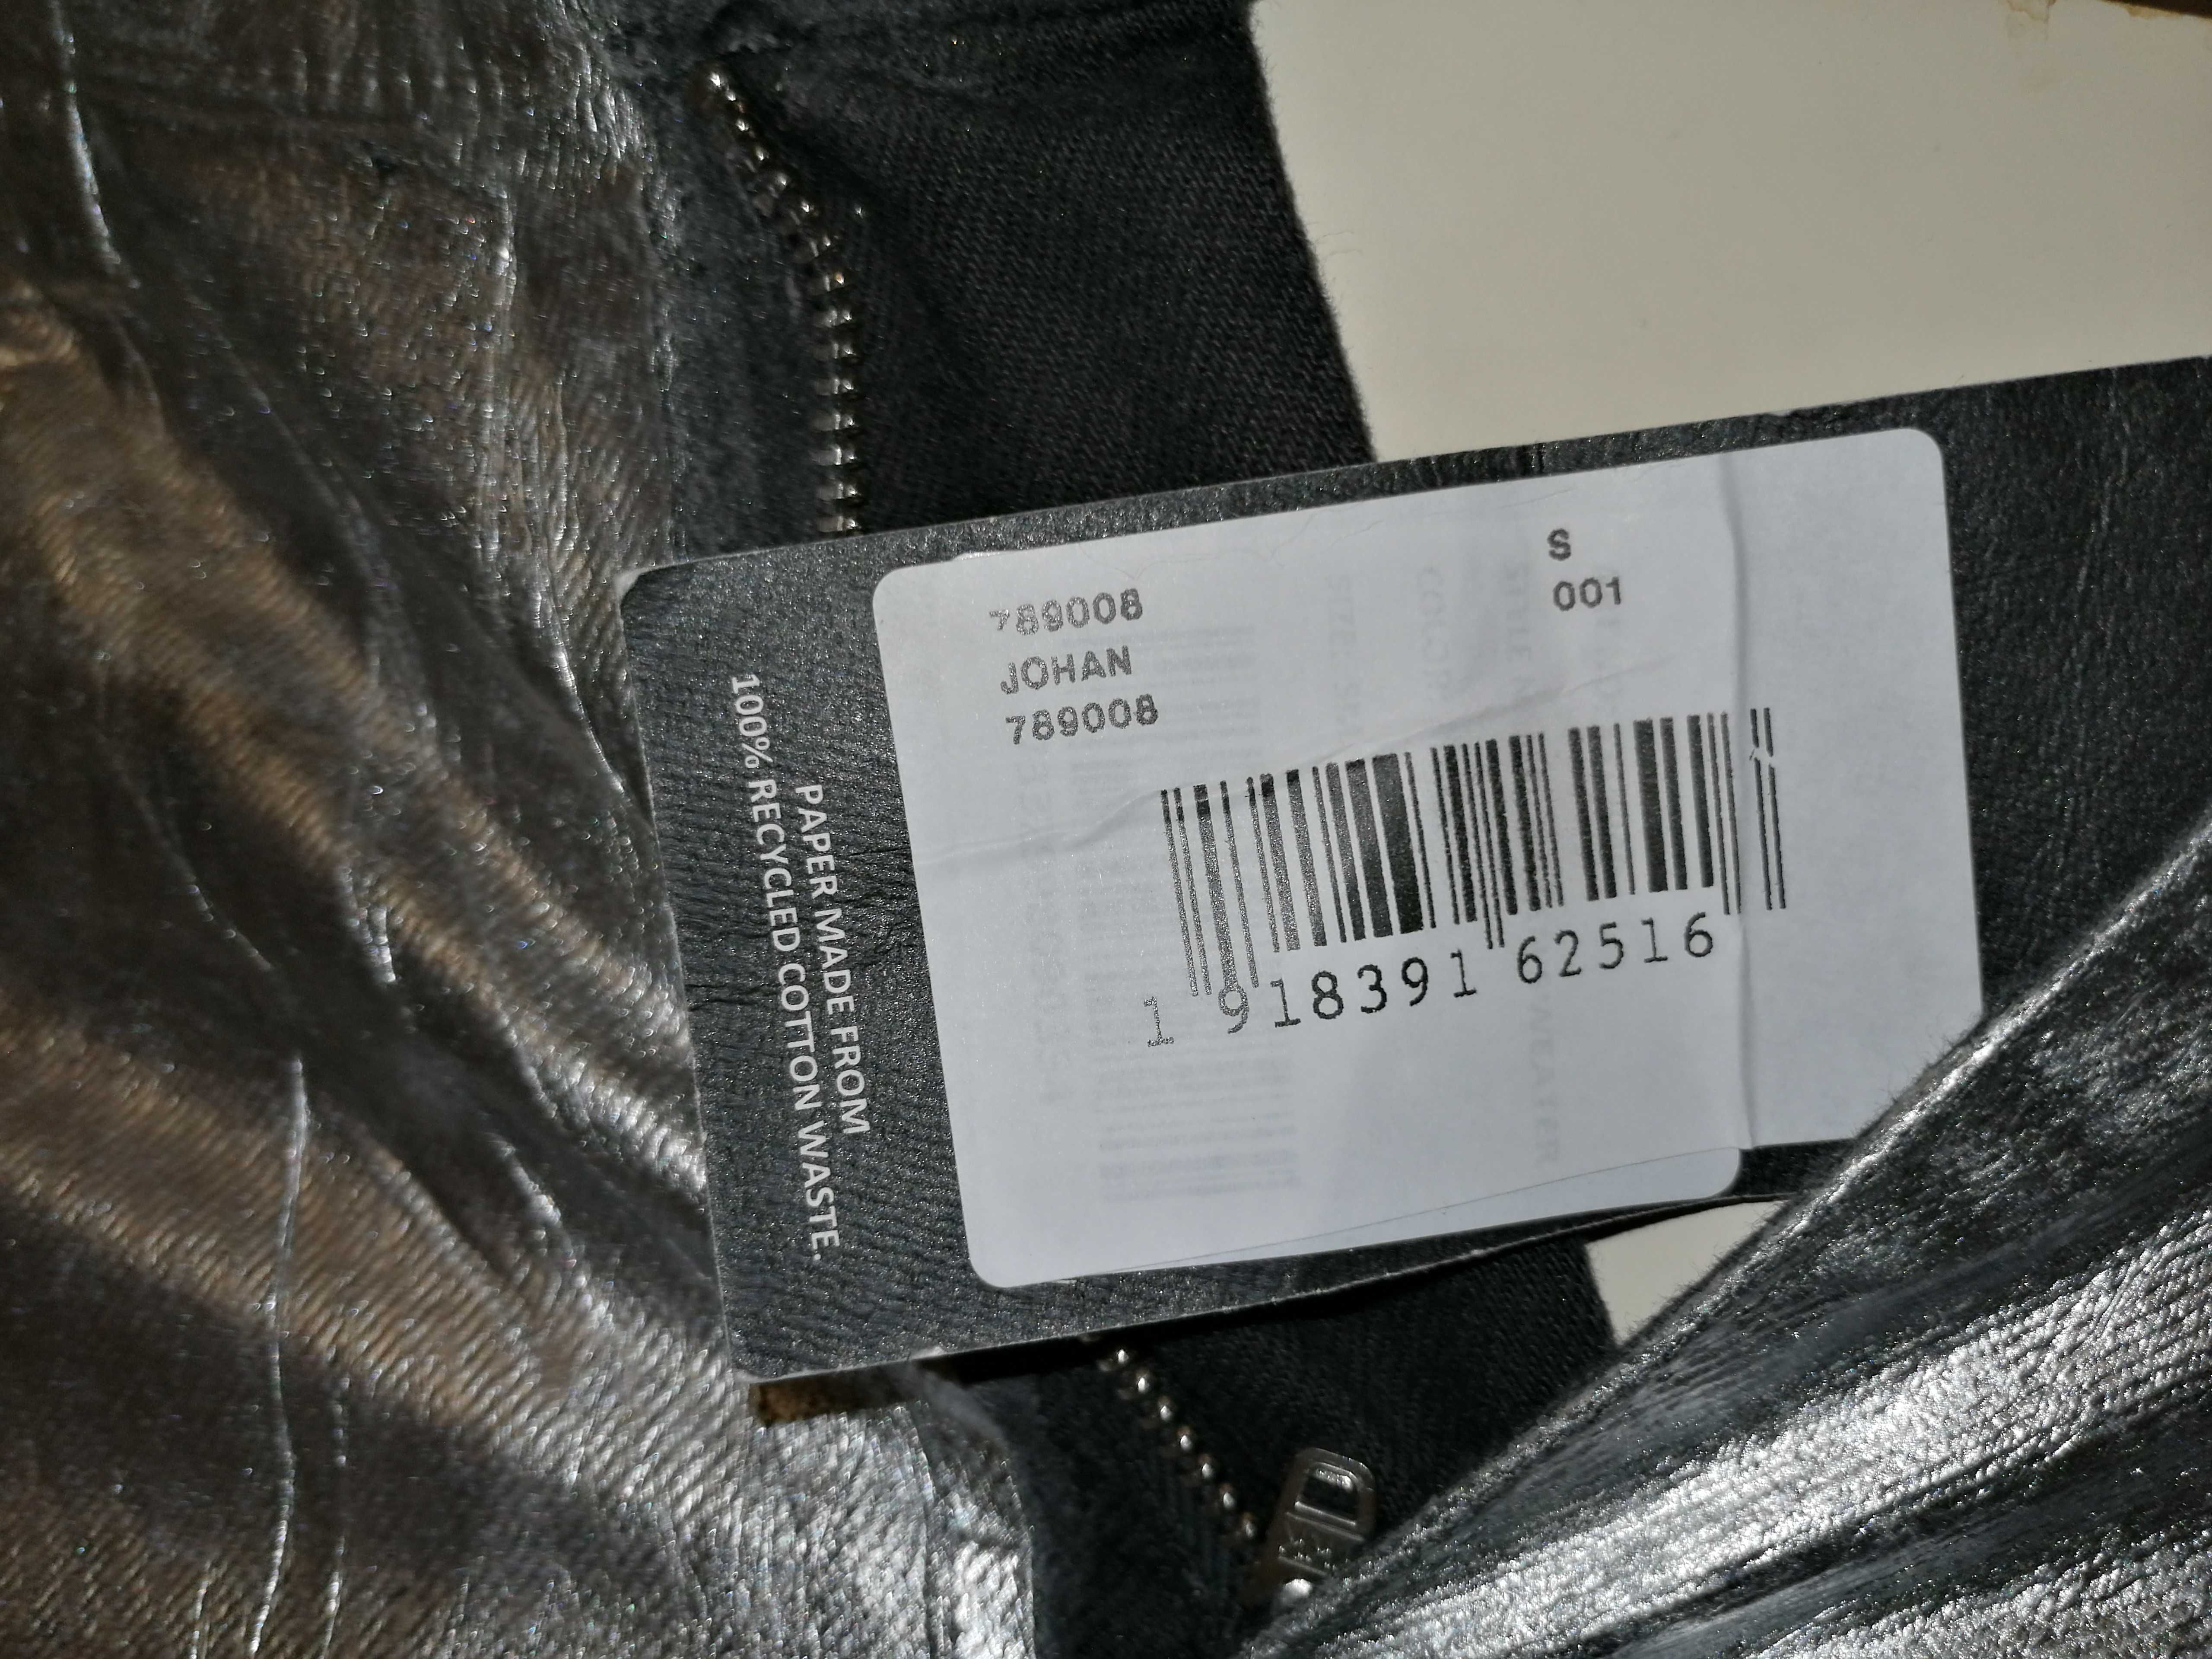 ZARA - SPYDER Metalic Jeans SILVER Damskie Spodnie Skinny, Rurki 36/S